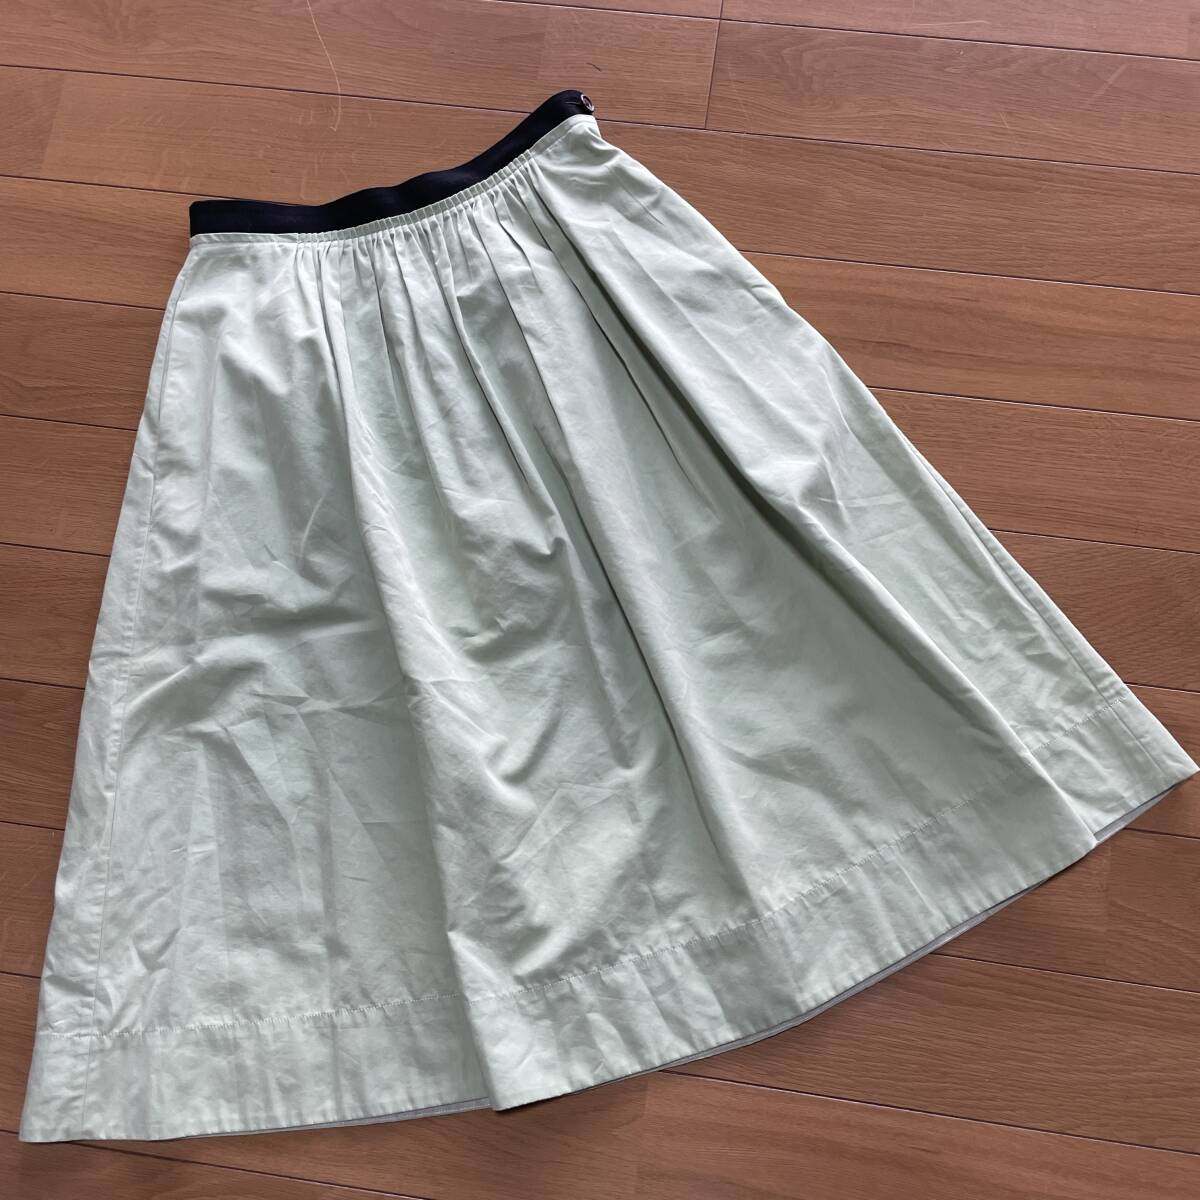 W-19 マーガレットハウエル（アングローバル・日本製） サイズ Ⅰ！ コットン（シルク18%入り）スカートの画像1